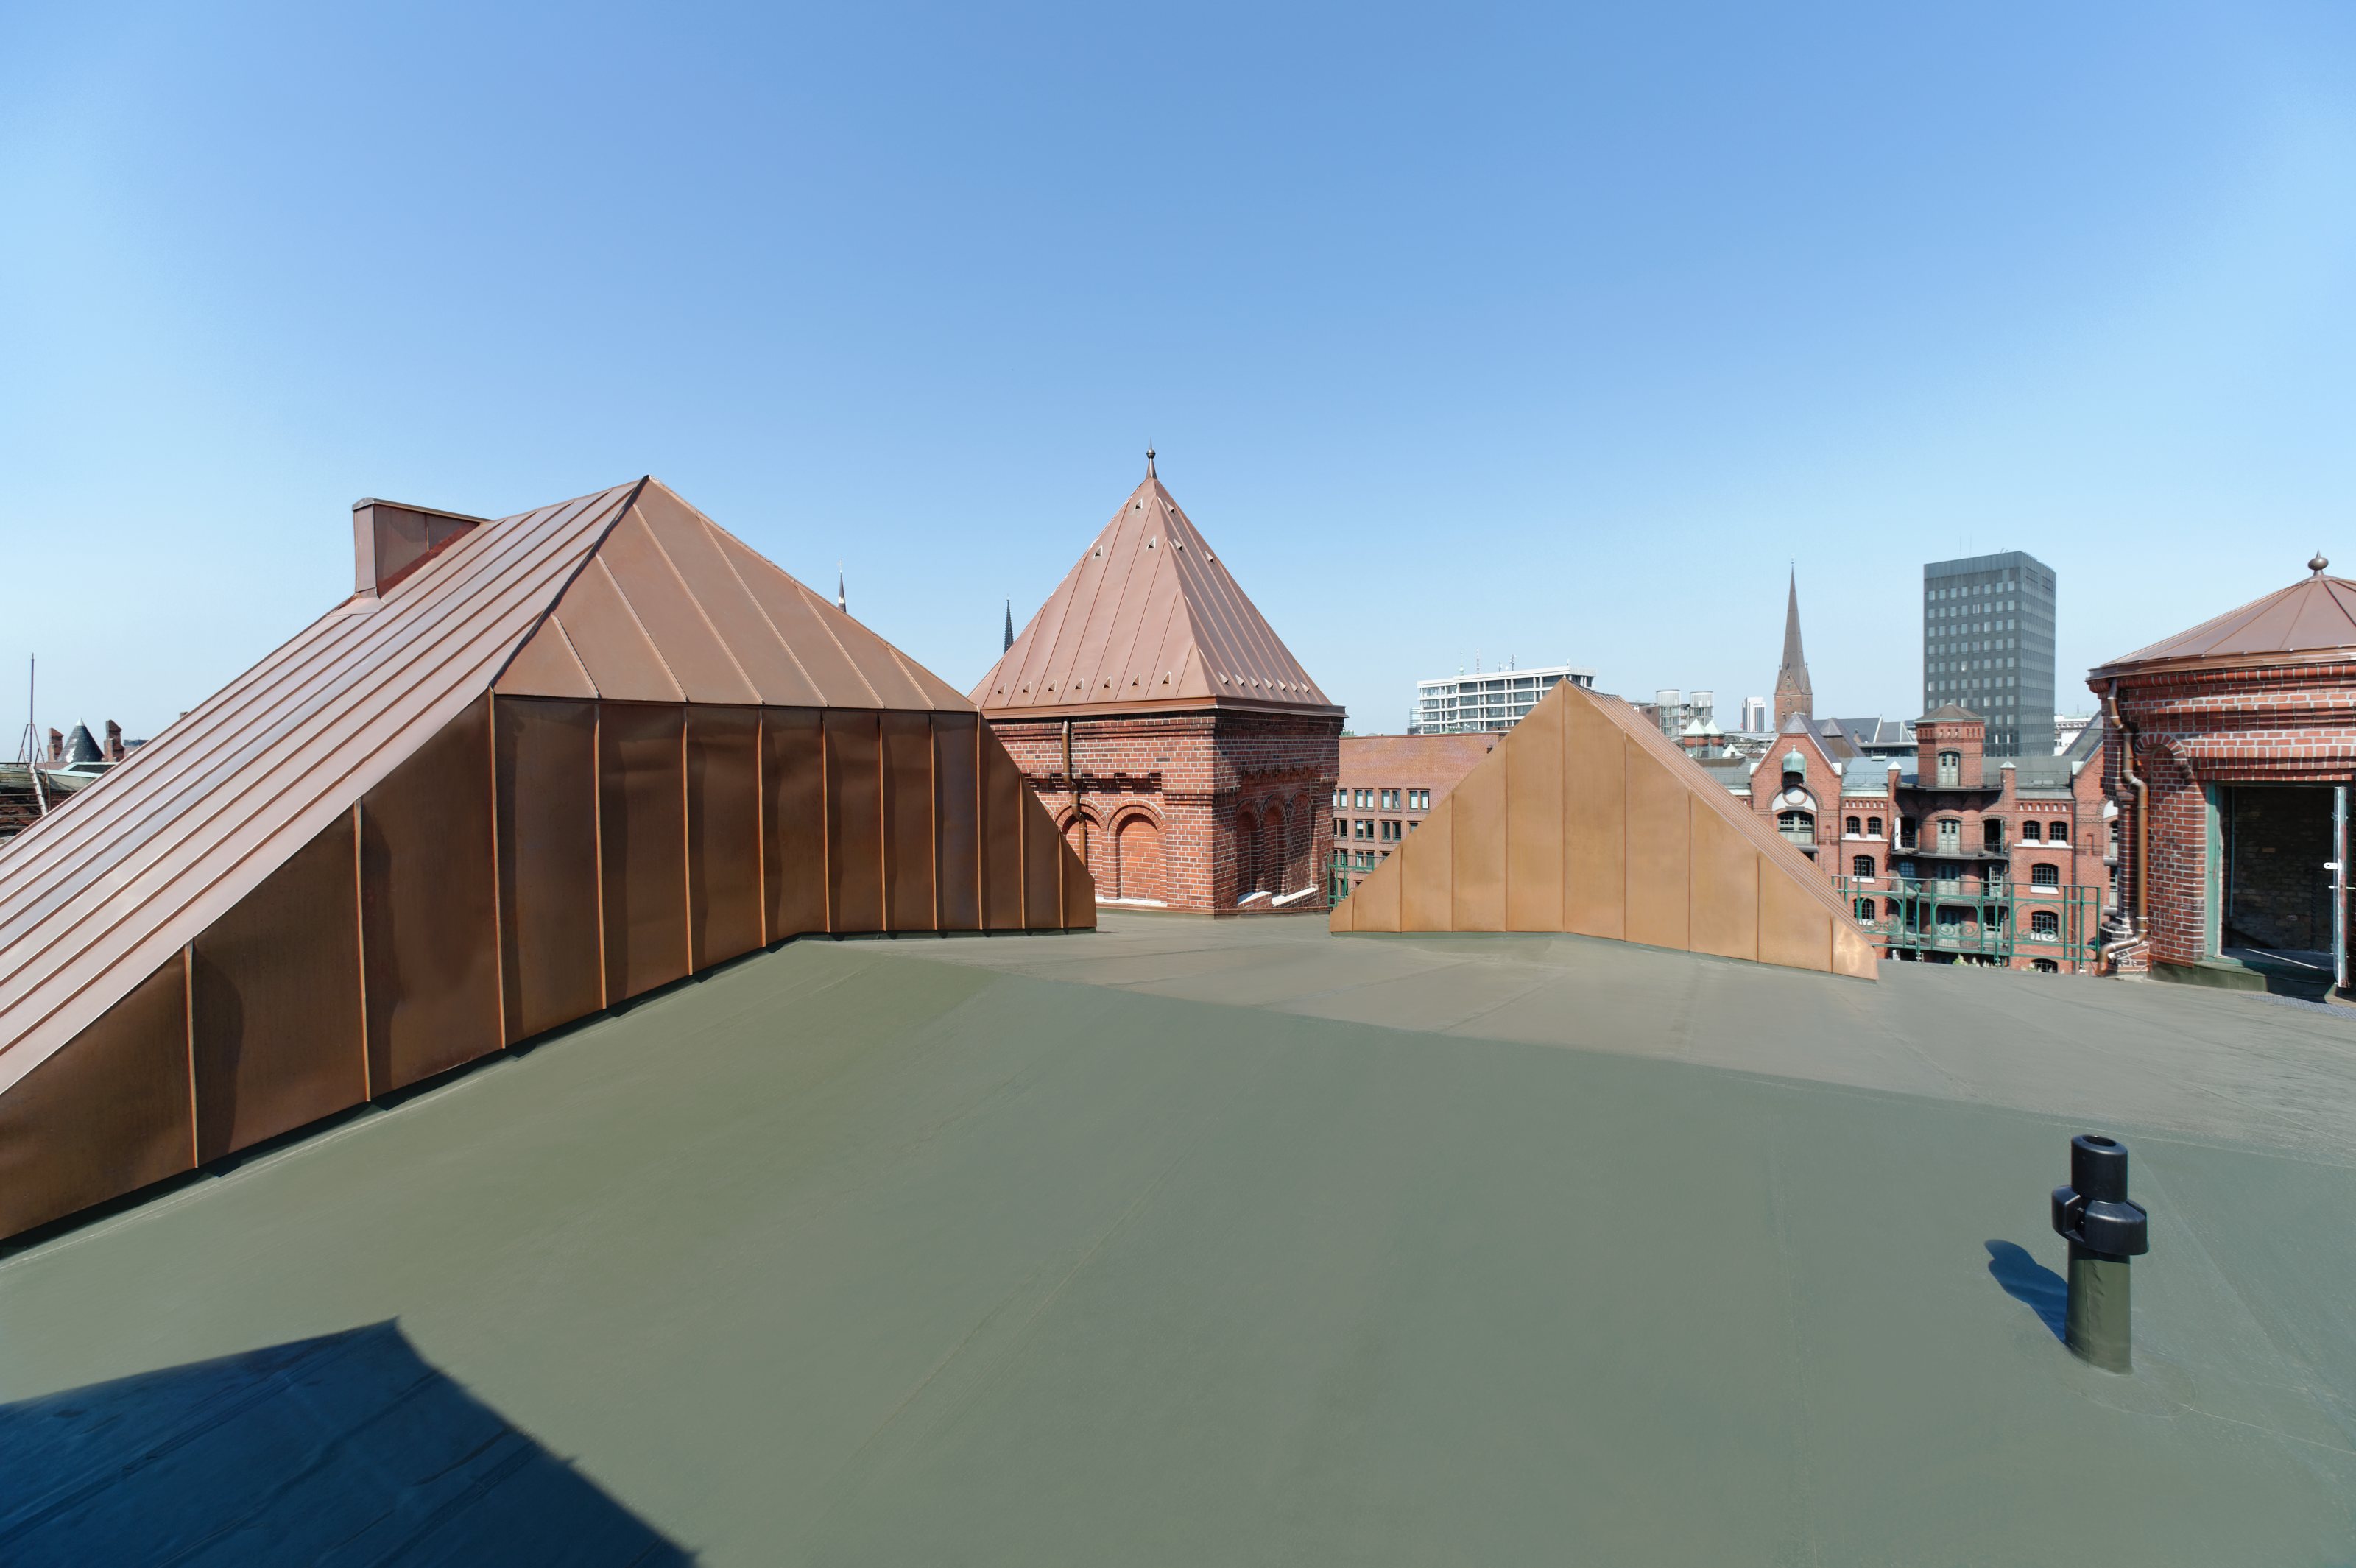 Refurbished roof of the "Speicherstadt" in Hamburg